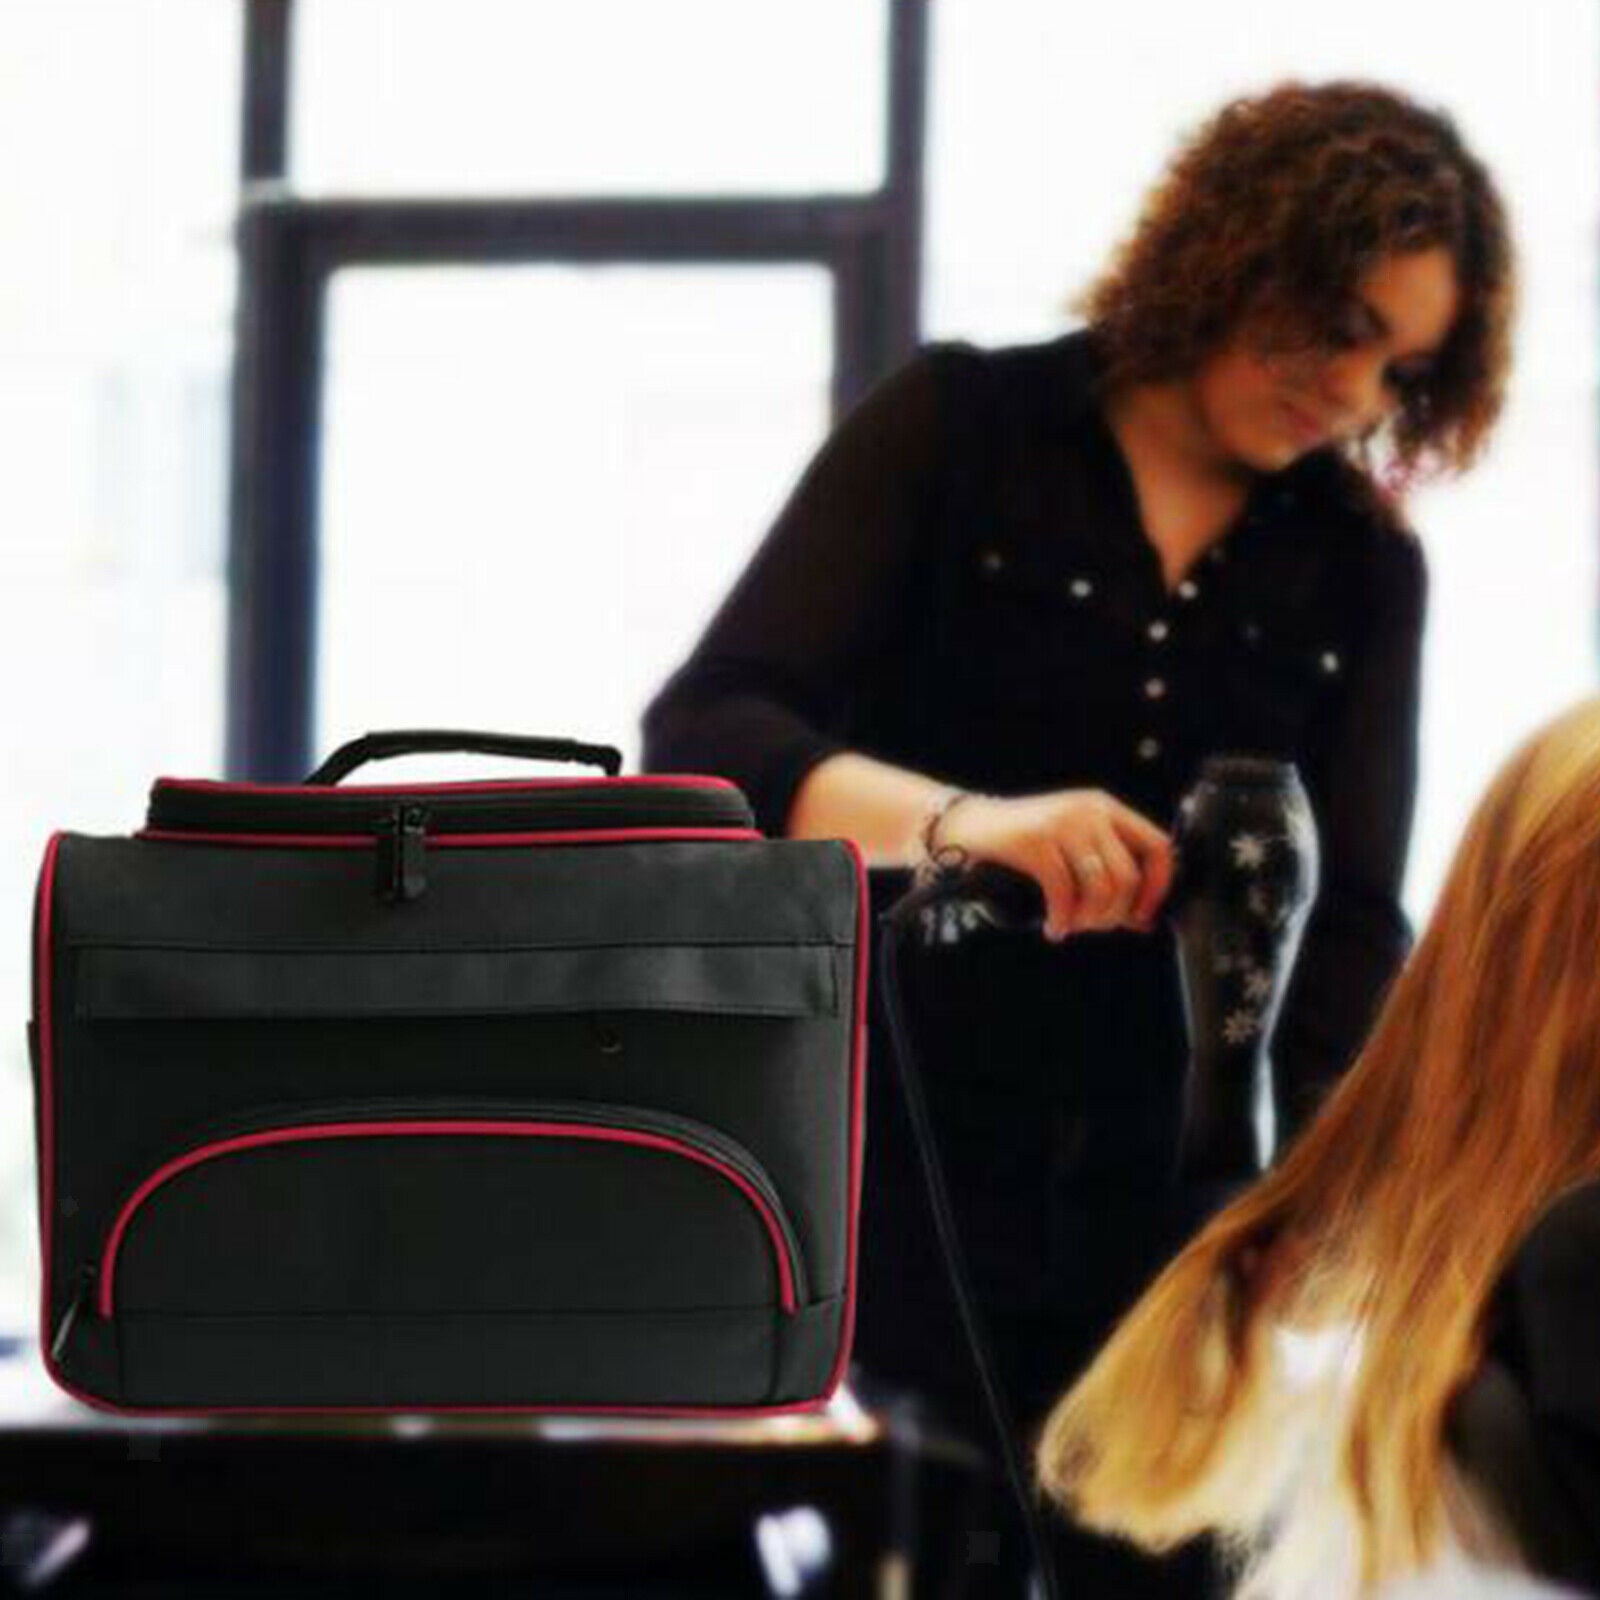 Salon Barber Handbag Hairdressing Tools Shoulder Bag Case Carrier Organizer